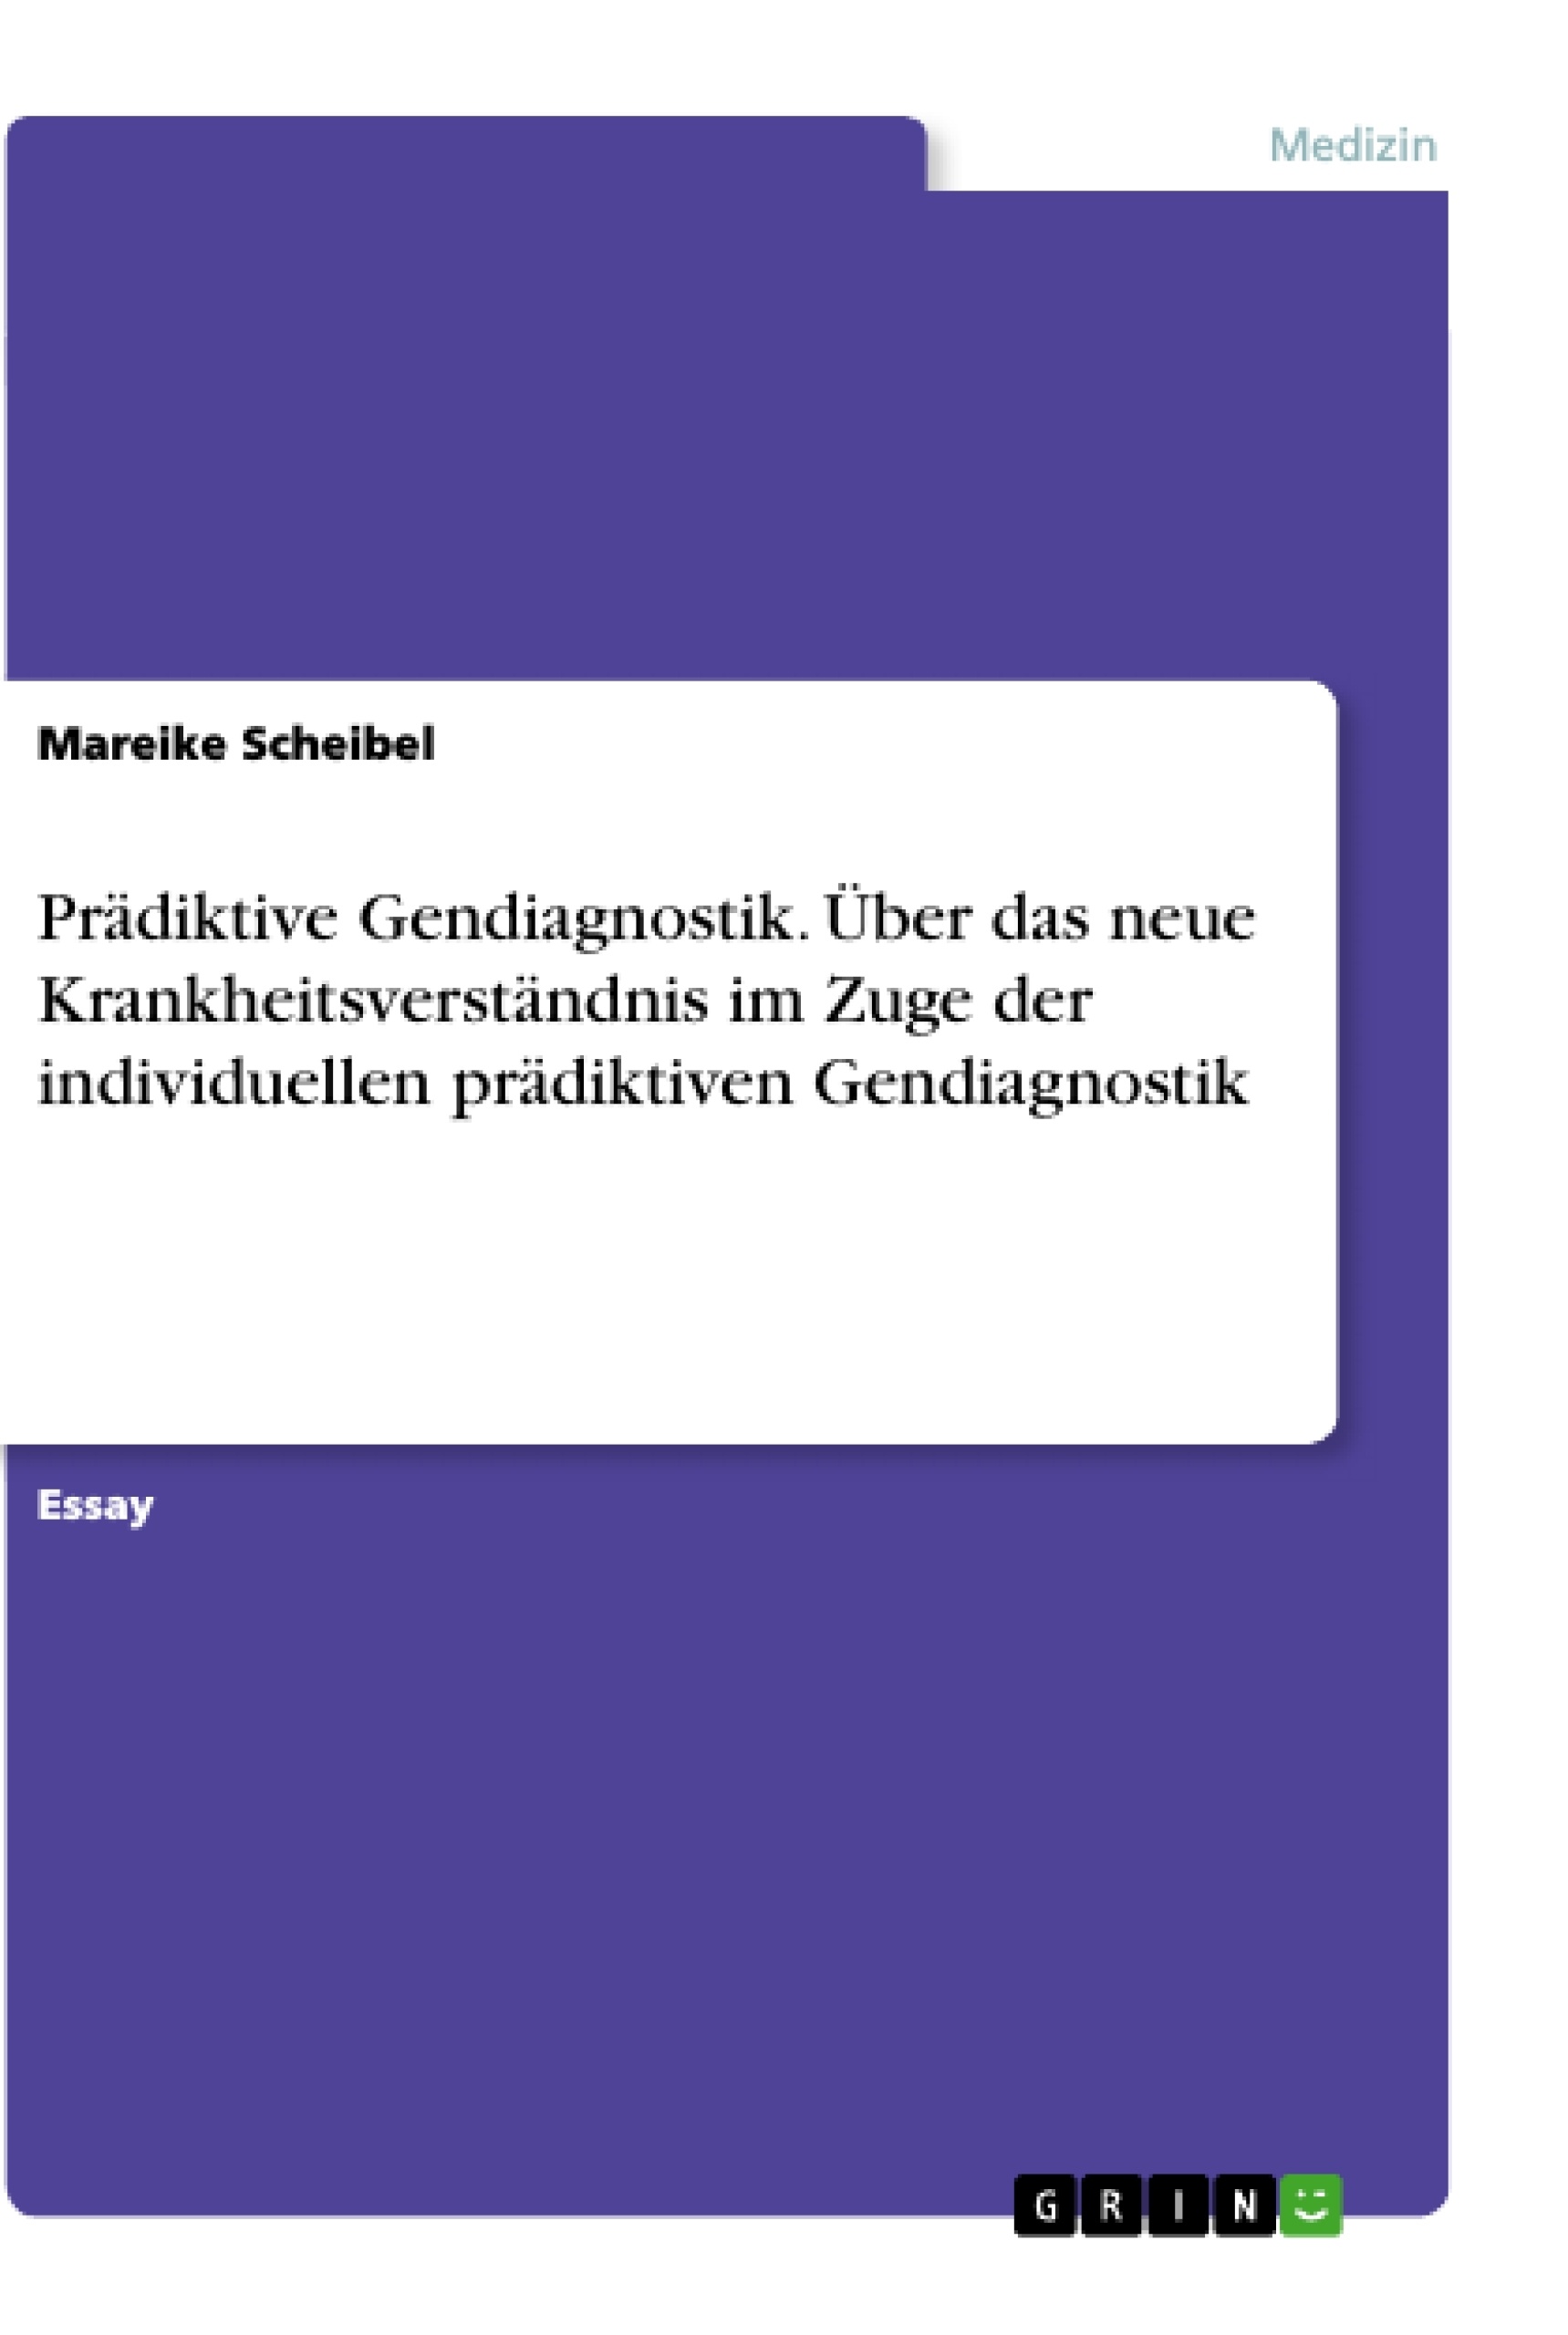 Título: Prädiktive Gendiagnostik. Über das neue Krankheitsverständnis im Zuge der individuellen prädiktiven Gendiagnostik